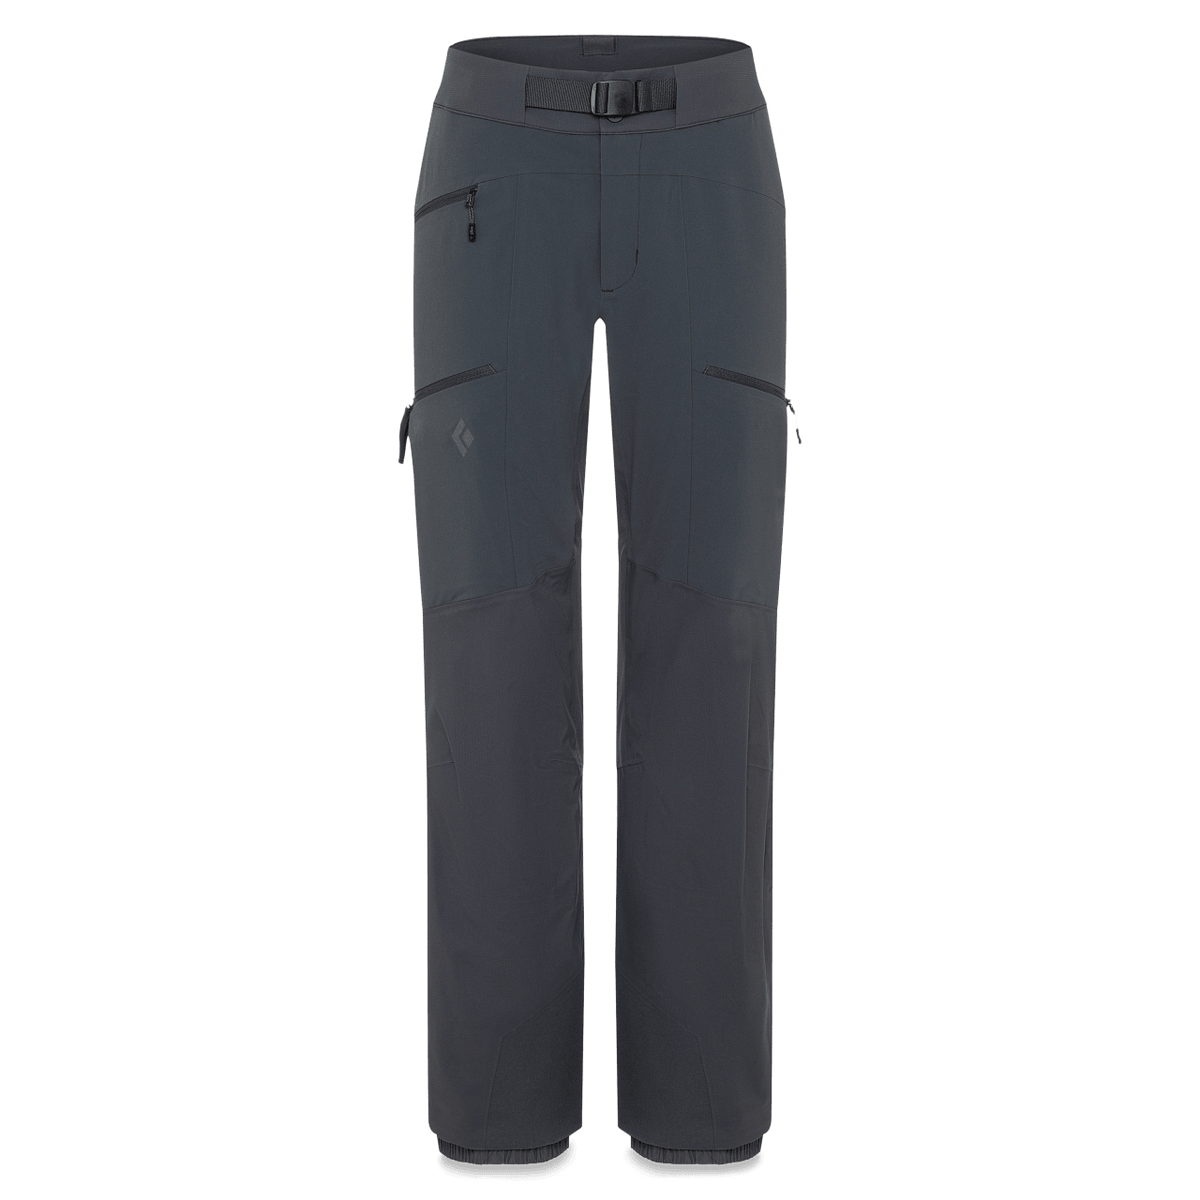 Black Diamond Dawn Patrol Pants Review 